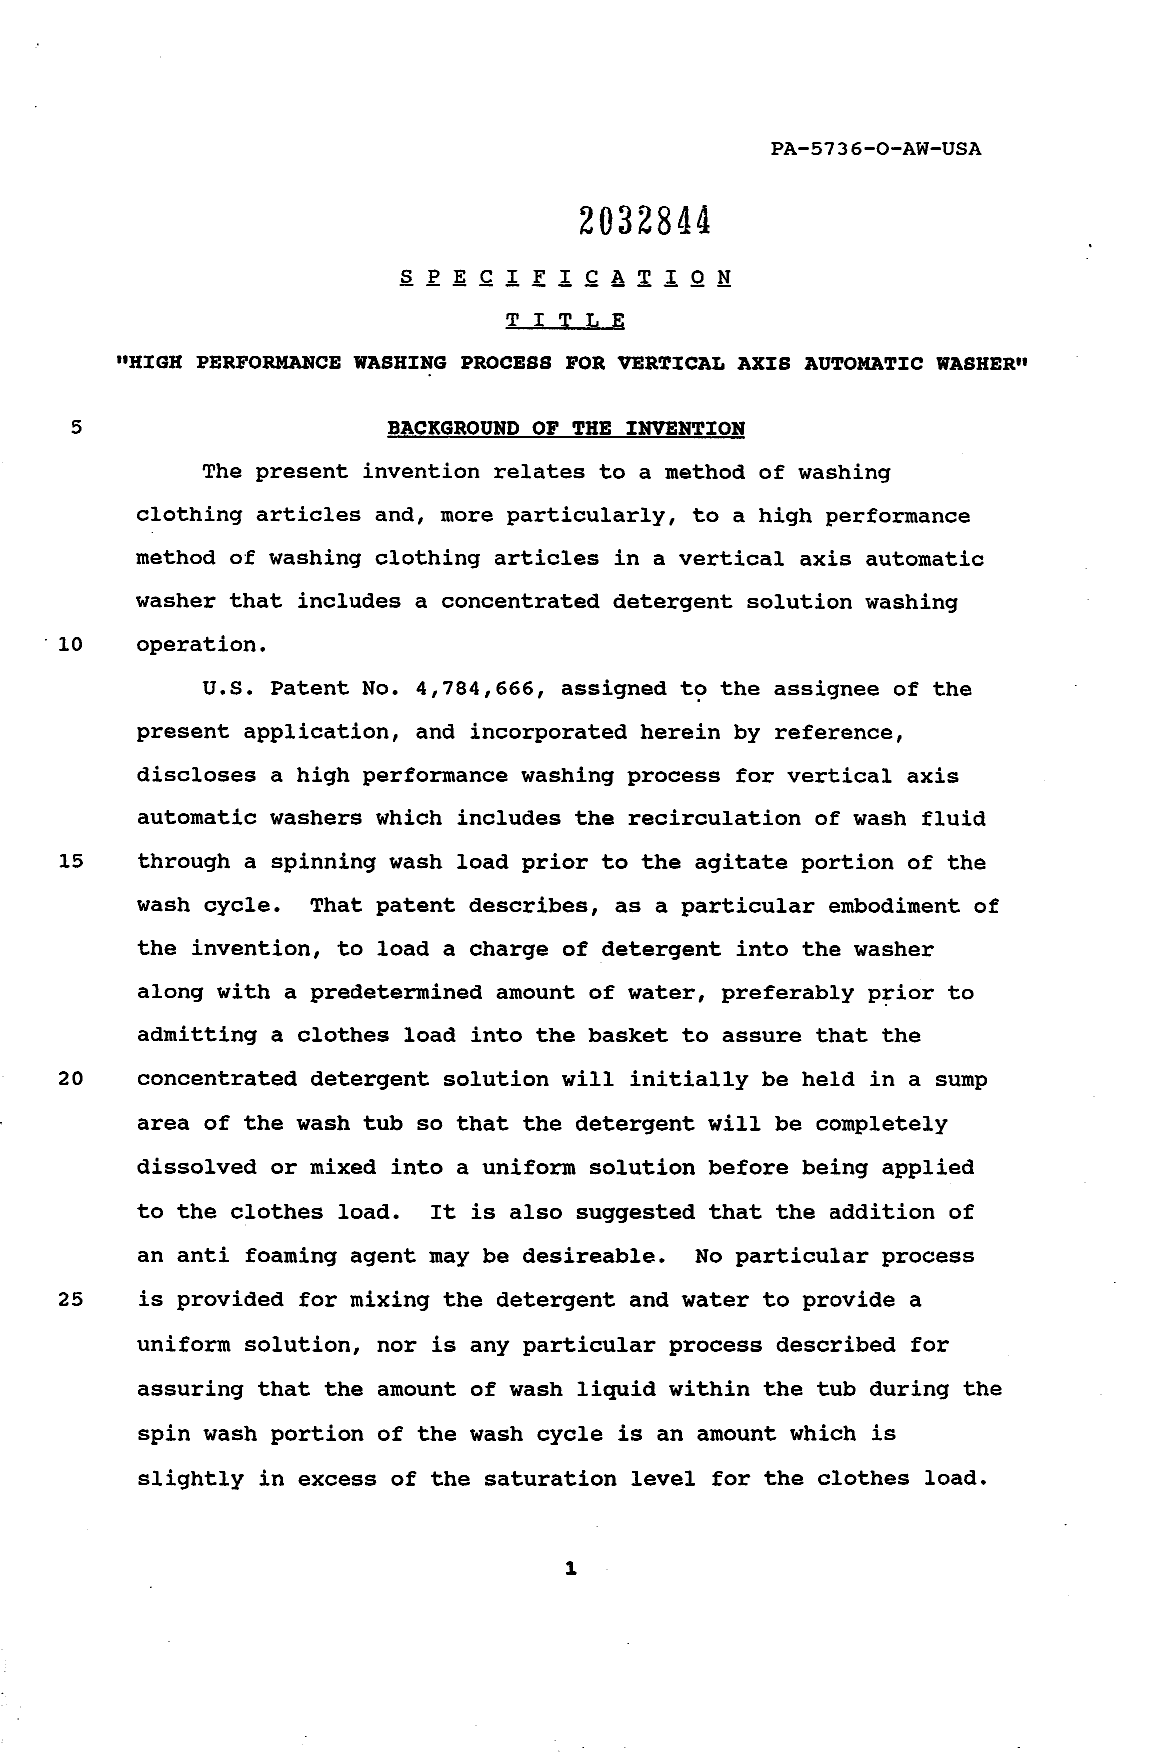 Canadian Patent Document 2032844. Description 19931112. Image 1 of 18